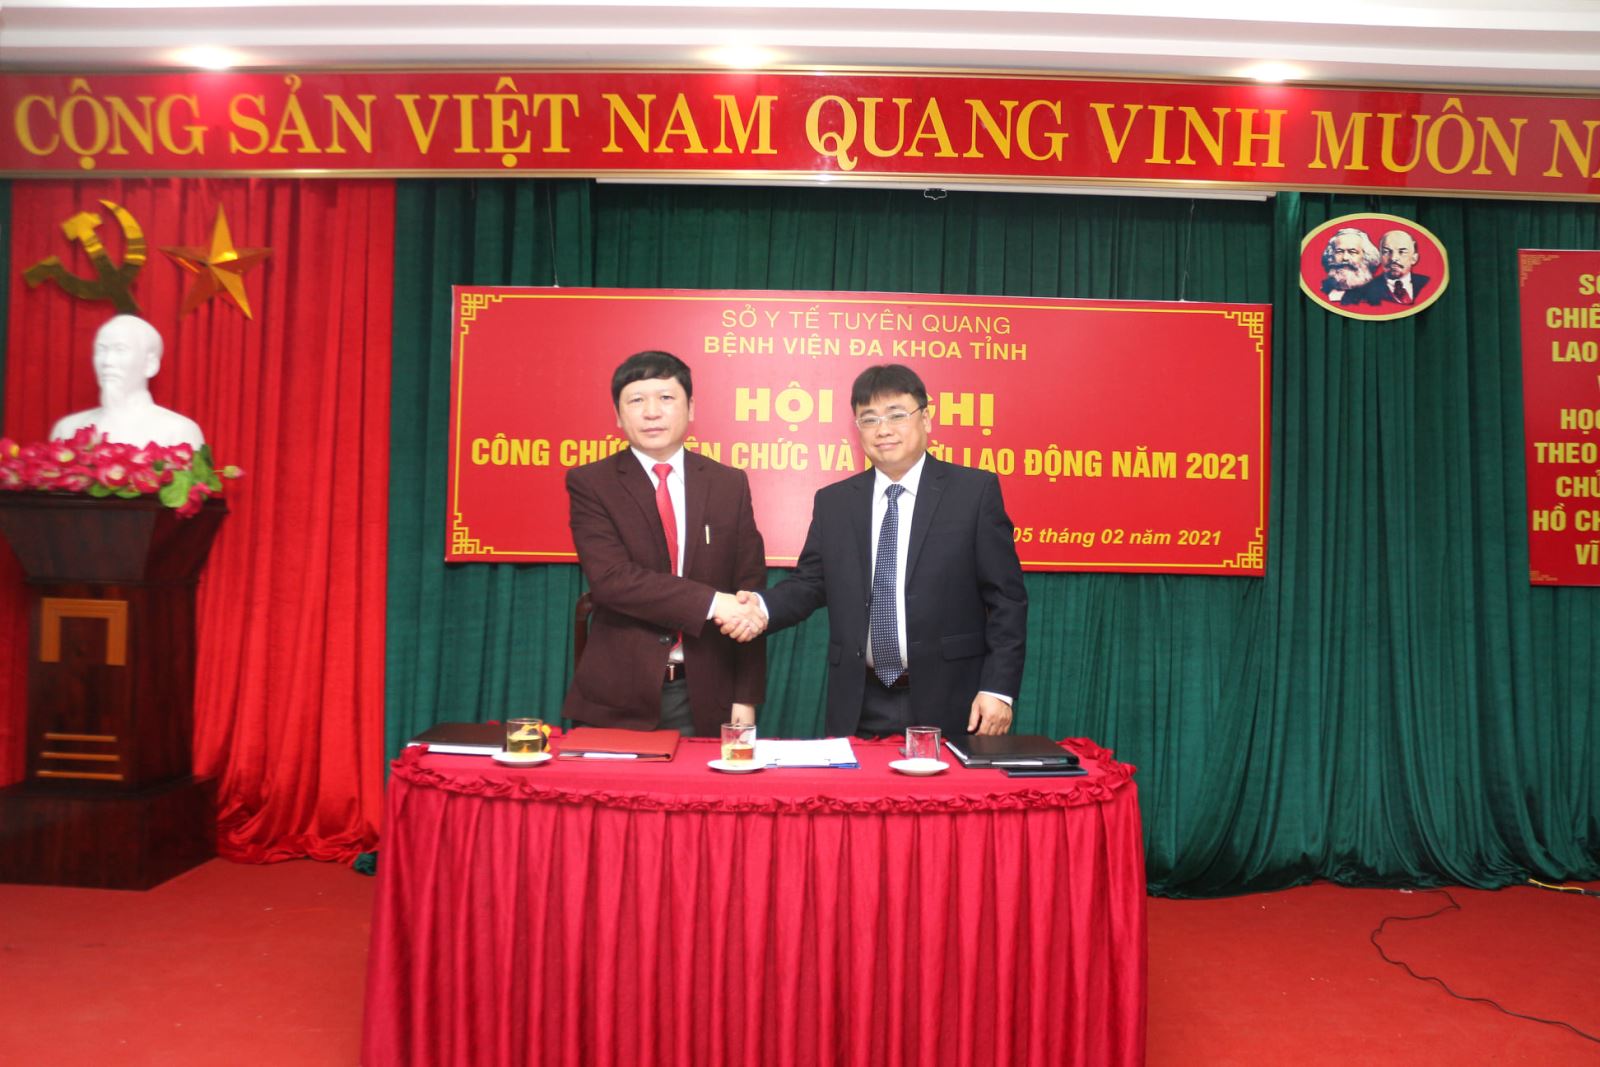 Giám đốc Bệnh viện và Chủ tịch Công đoàn Bệnh viện ký cam kết thi đua giữa Chính quyền và Công đoàn về việc thực hiện Nghị quyết Hội nghị CNVC Bệnh viện đa khoa tỉnh Tuyên Quang năm 2021.